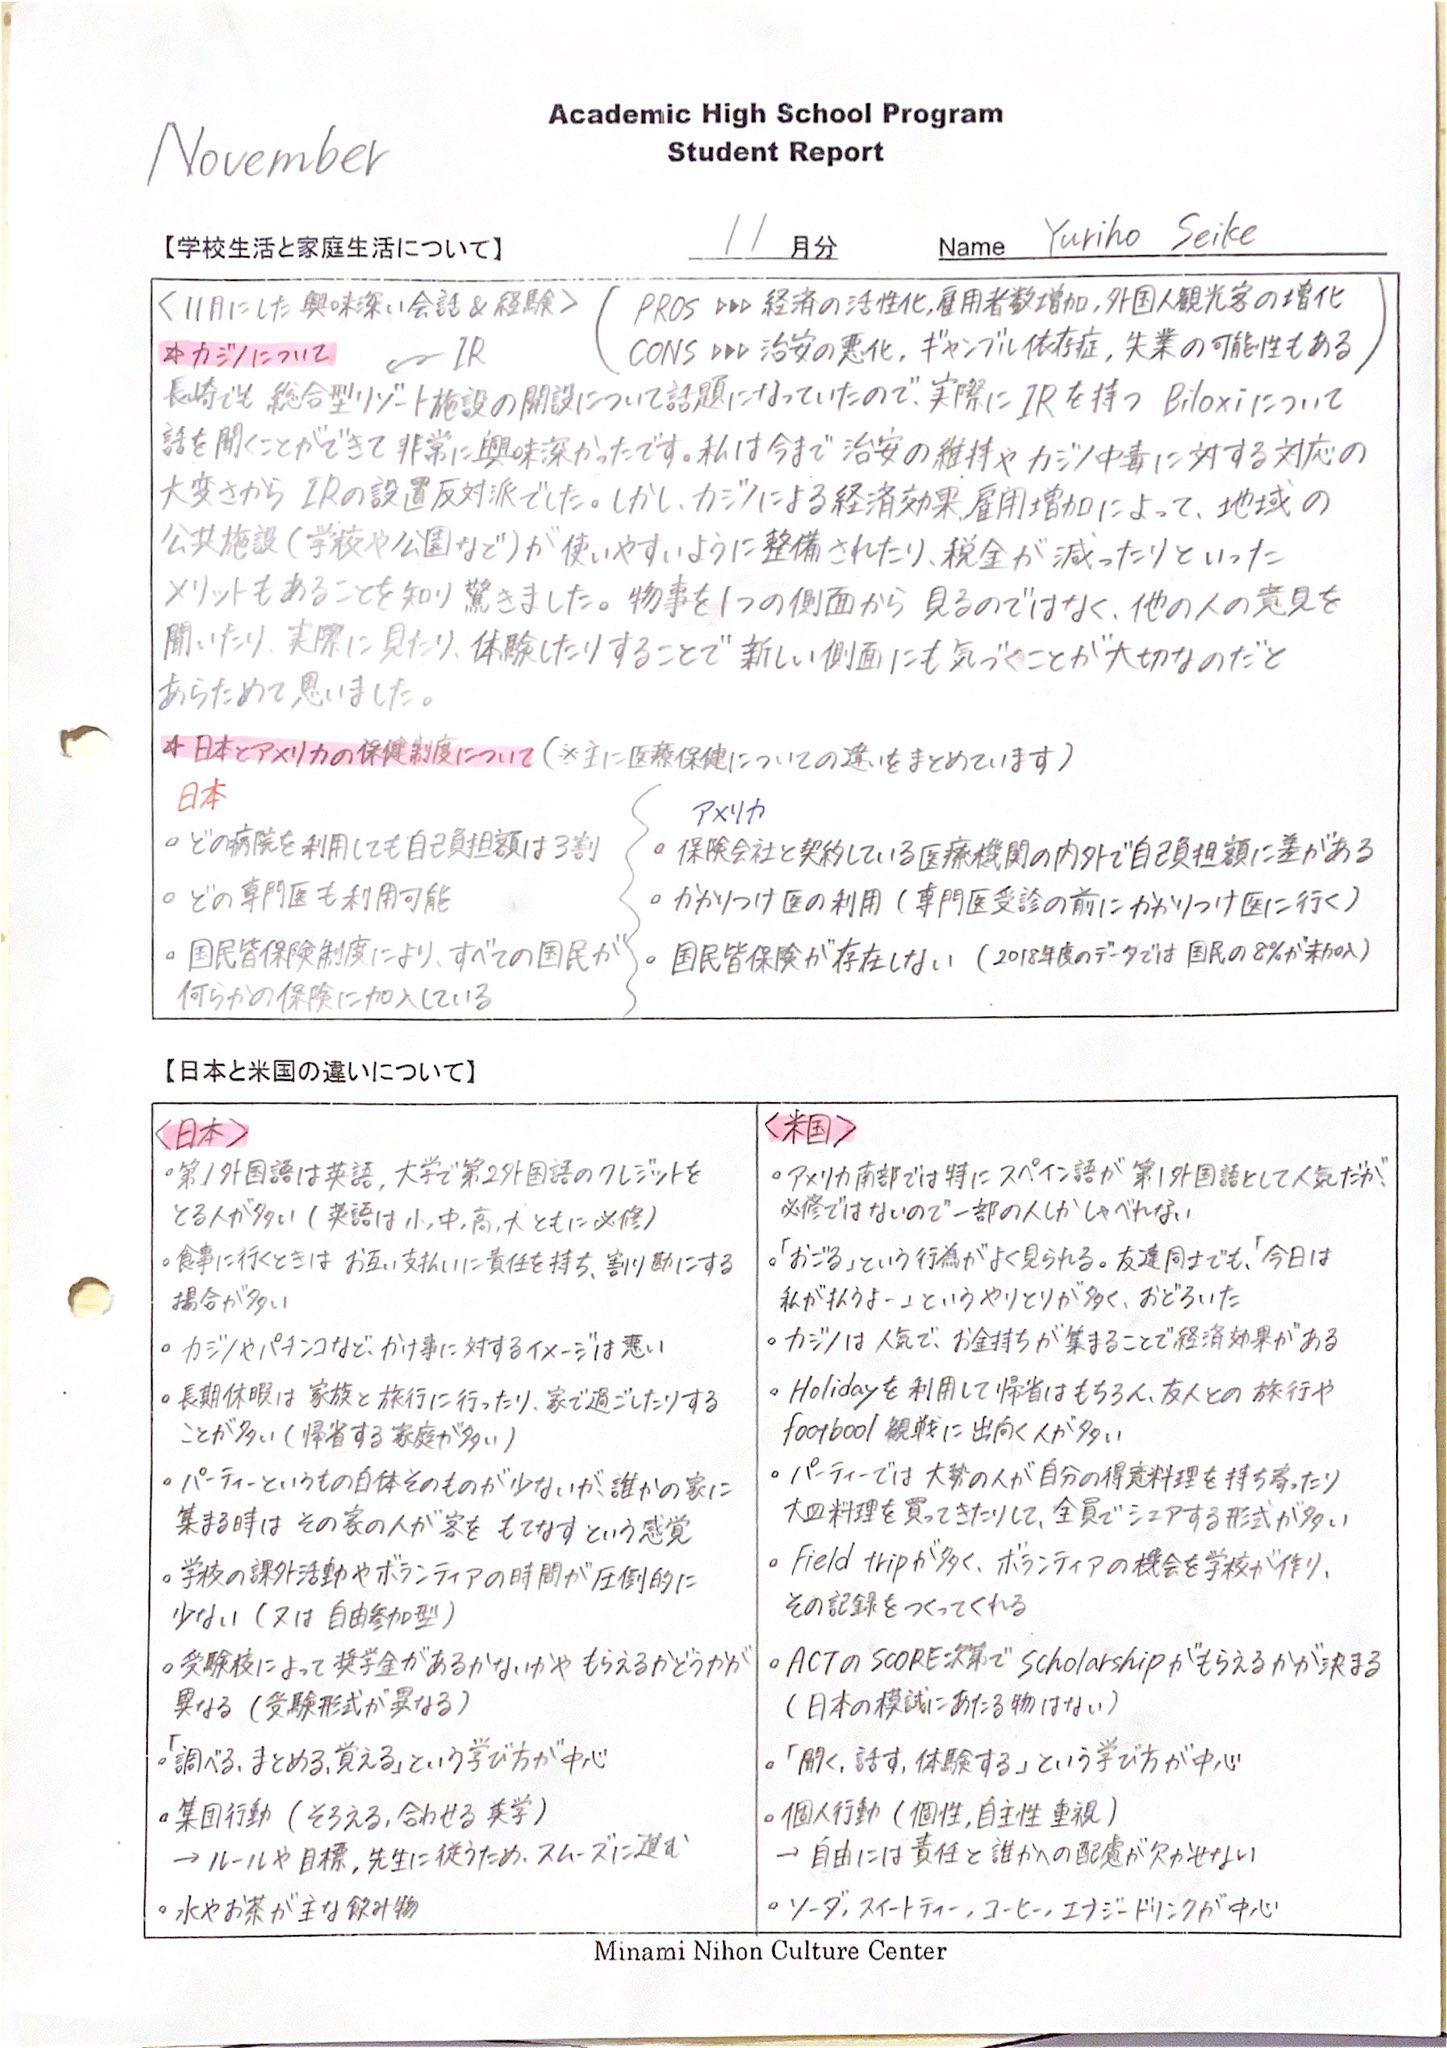 Yuriho's Student Report in November